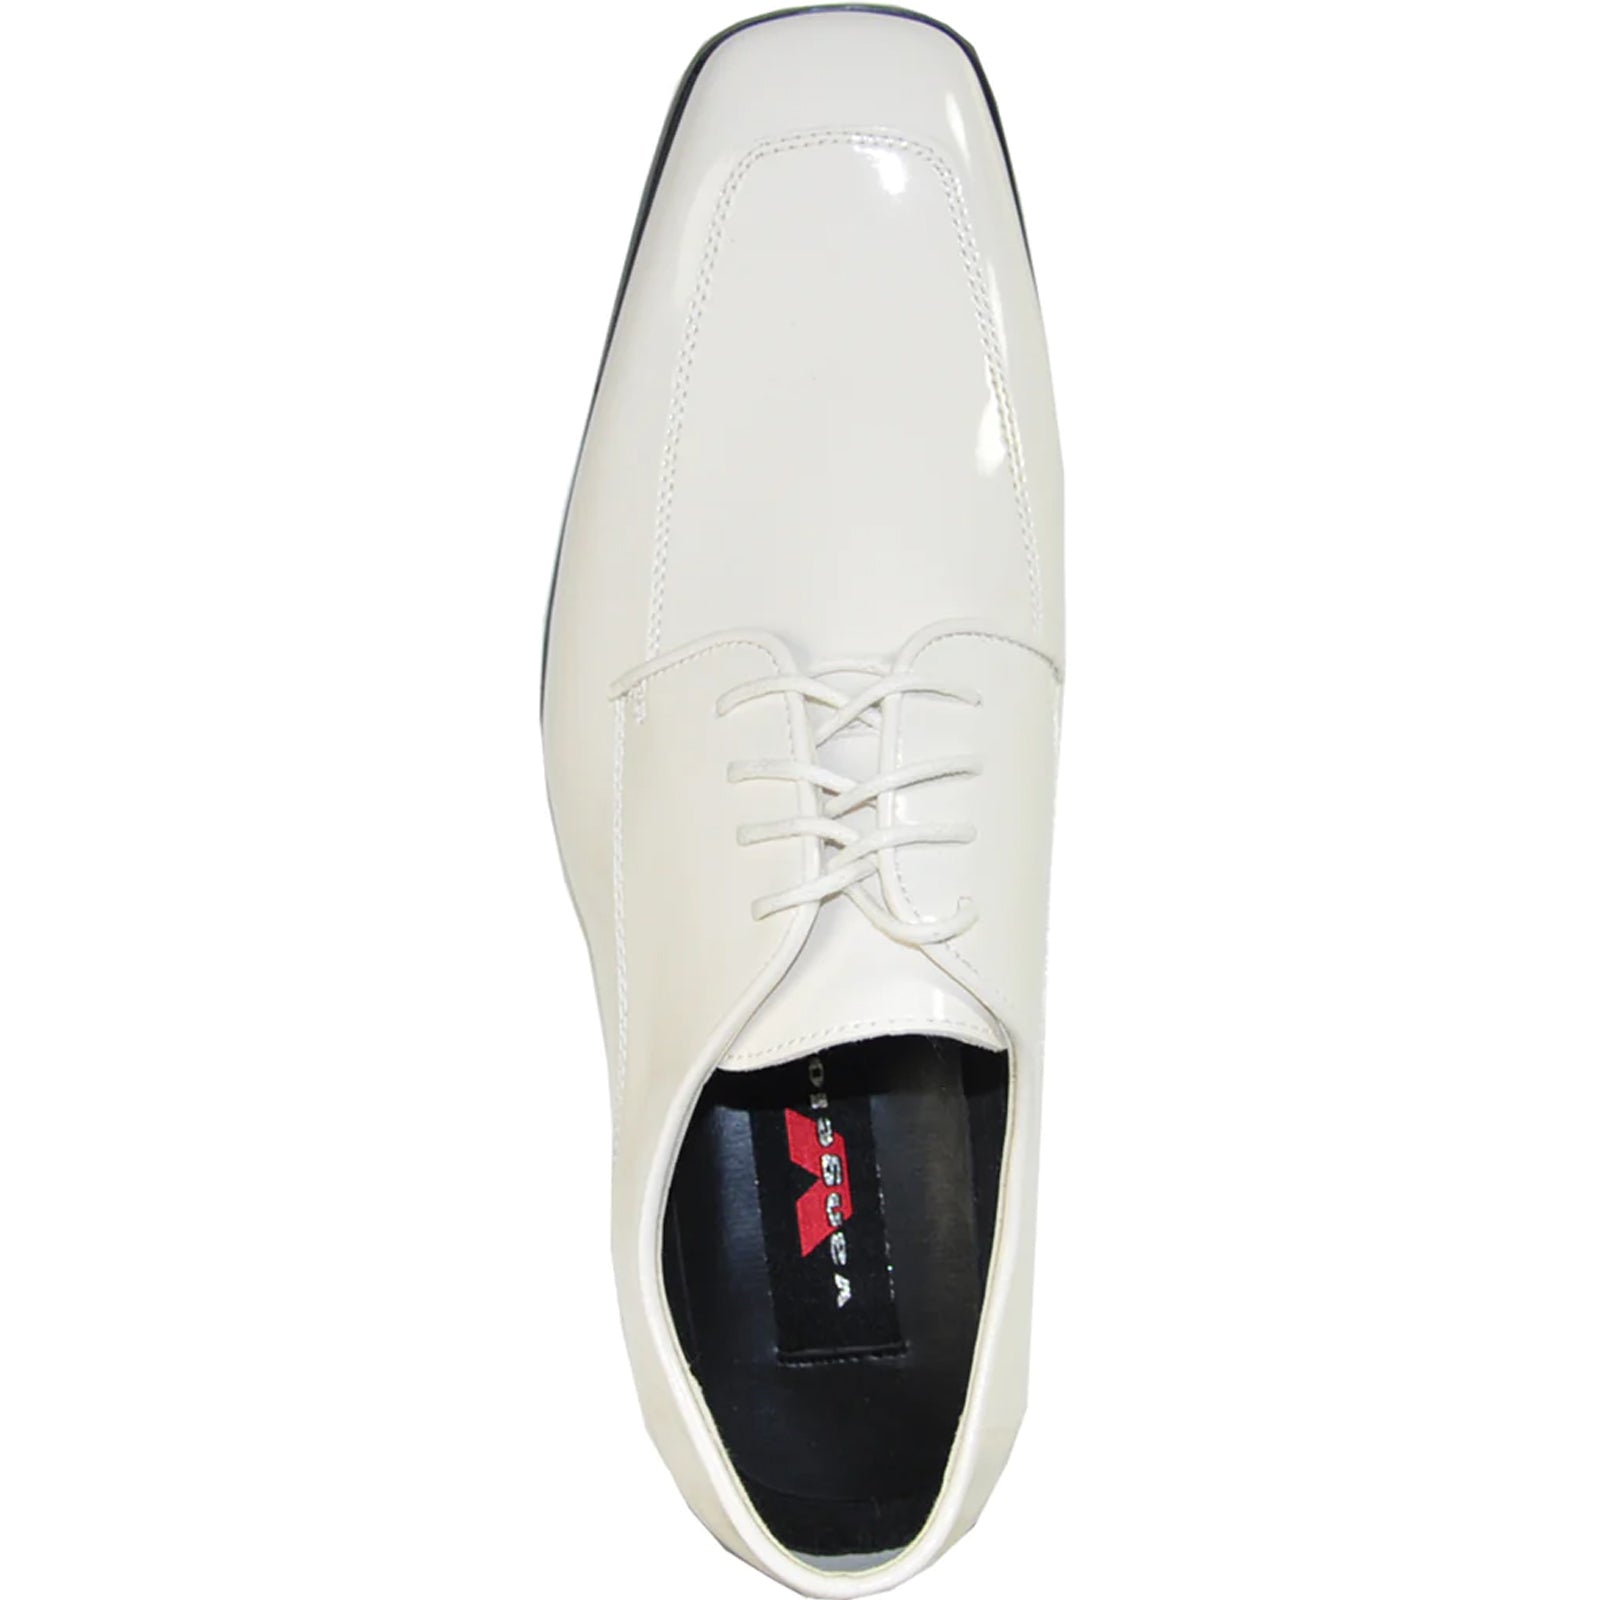 "Ivory Men's Classic Moc Toe Patent Tuxedo Prom Shoe"